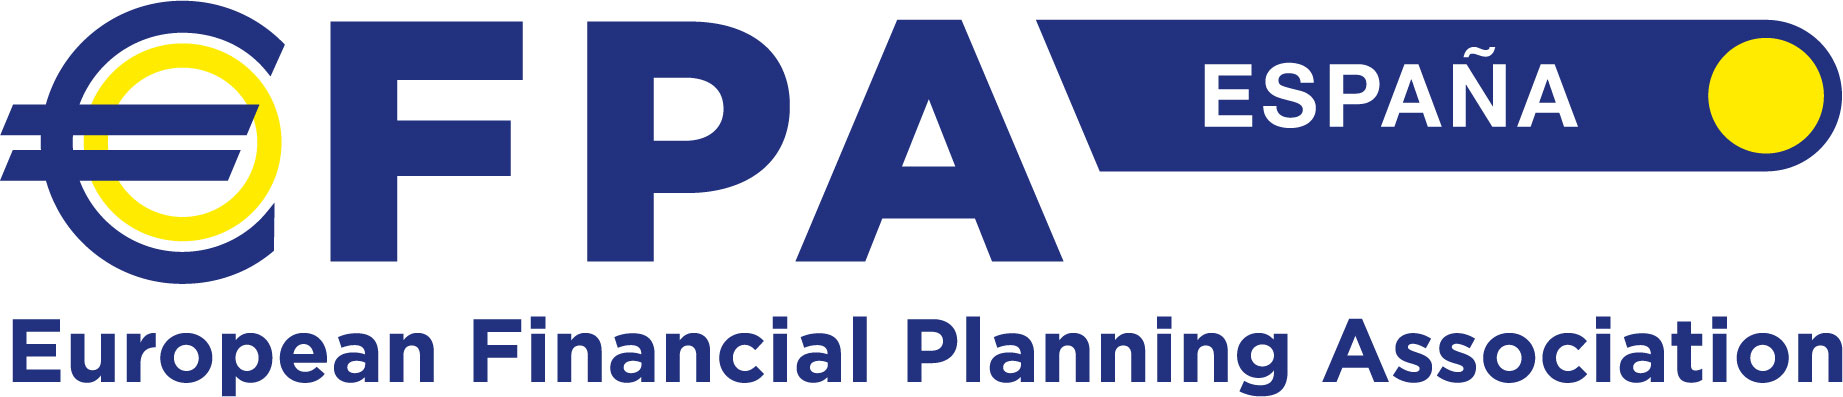 EFPA España, Asociación Española de Asesores y Planificadores Financieros